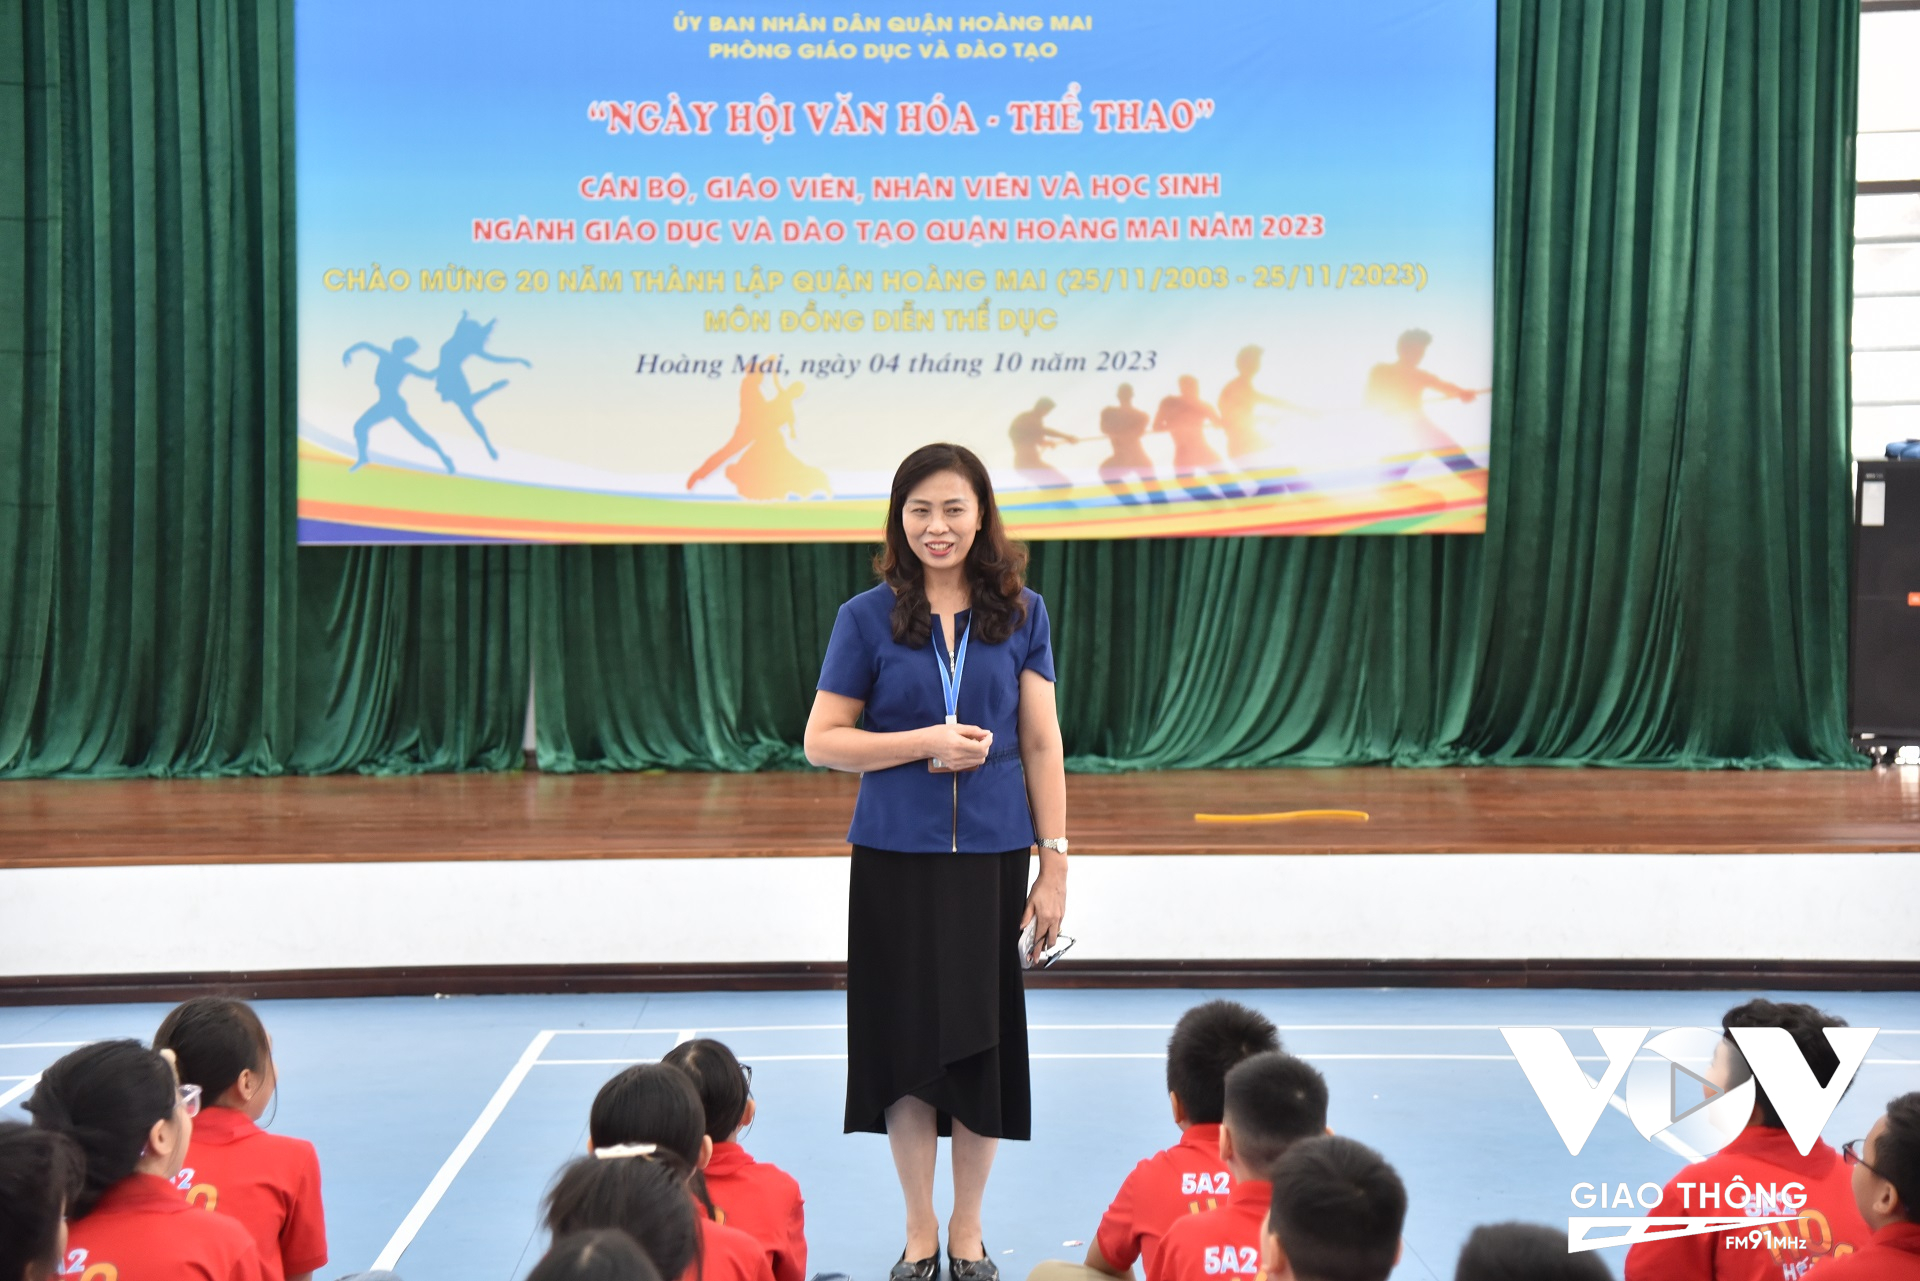 Theo cô giáo Bùi Thị Thu Thanh – Hiệu trưởng trường Tiểu học Tân Mai, các em học sinh luôn rất hào hứng khi được hướng dẫn các kỹ năng về phòng cháy chữa cháy và cứu nạn cứu hộ